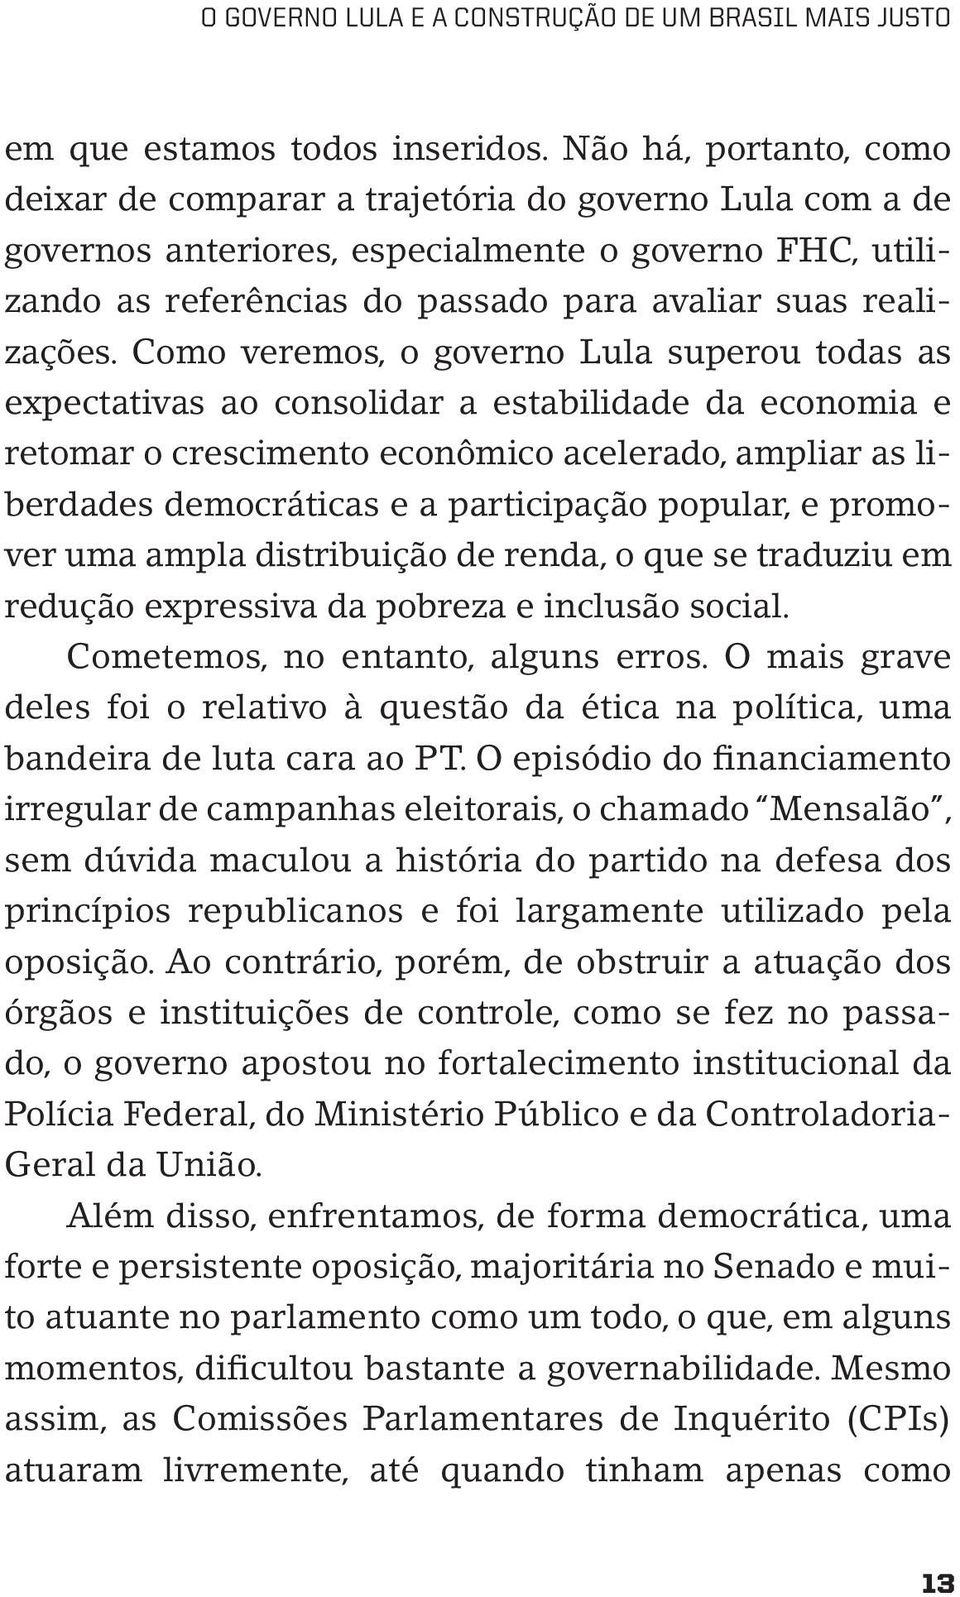 Como veremos, o governo Lula superou todas as expectativas ao consolidar a estabilidade da economia e retomar o crescimento econômico acelerado, ampliar as liberdades democráticas e a participação